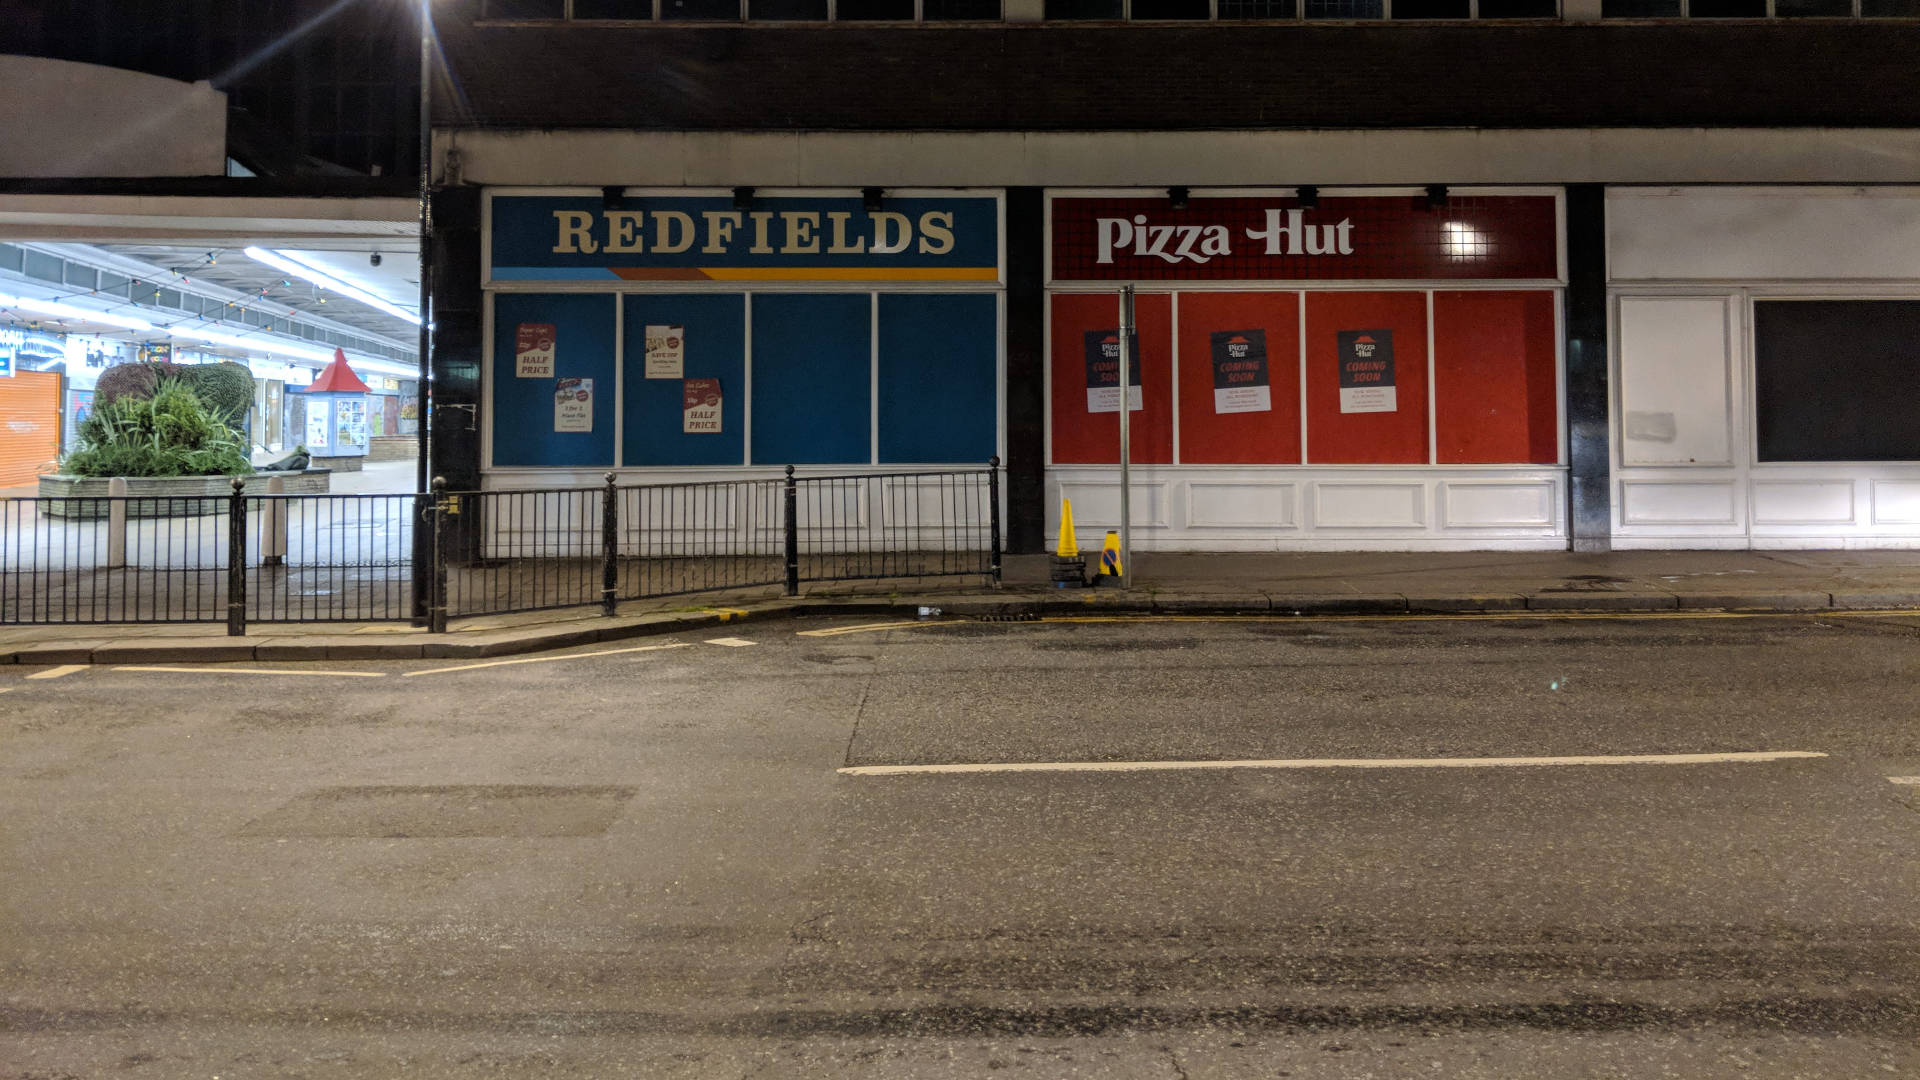 Pizza Hut og Redfields butikker Wallpaper